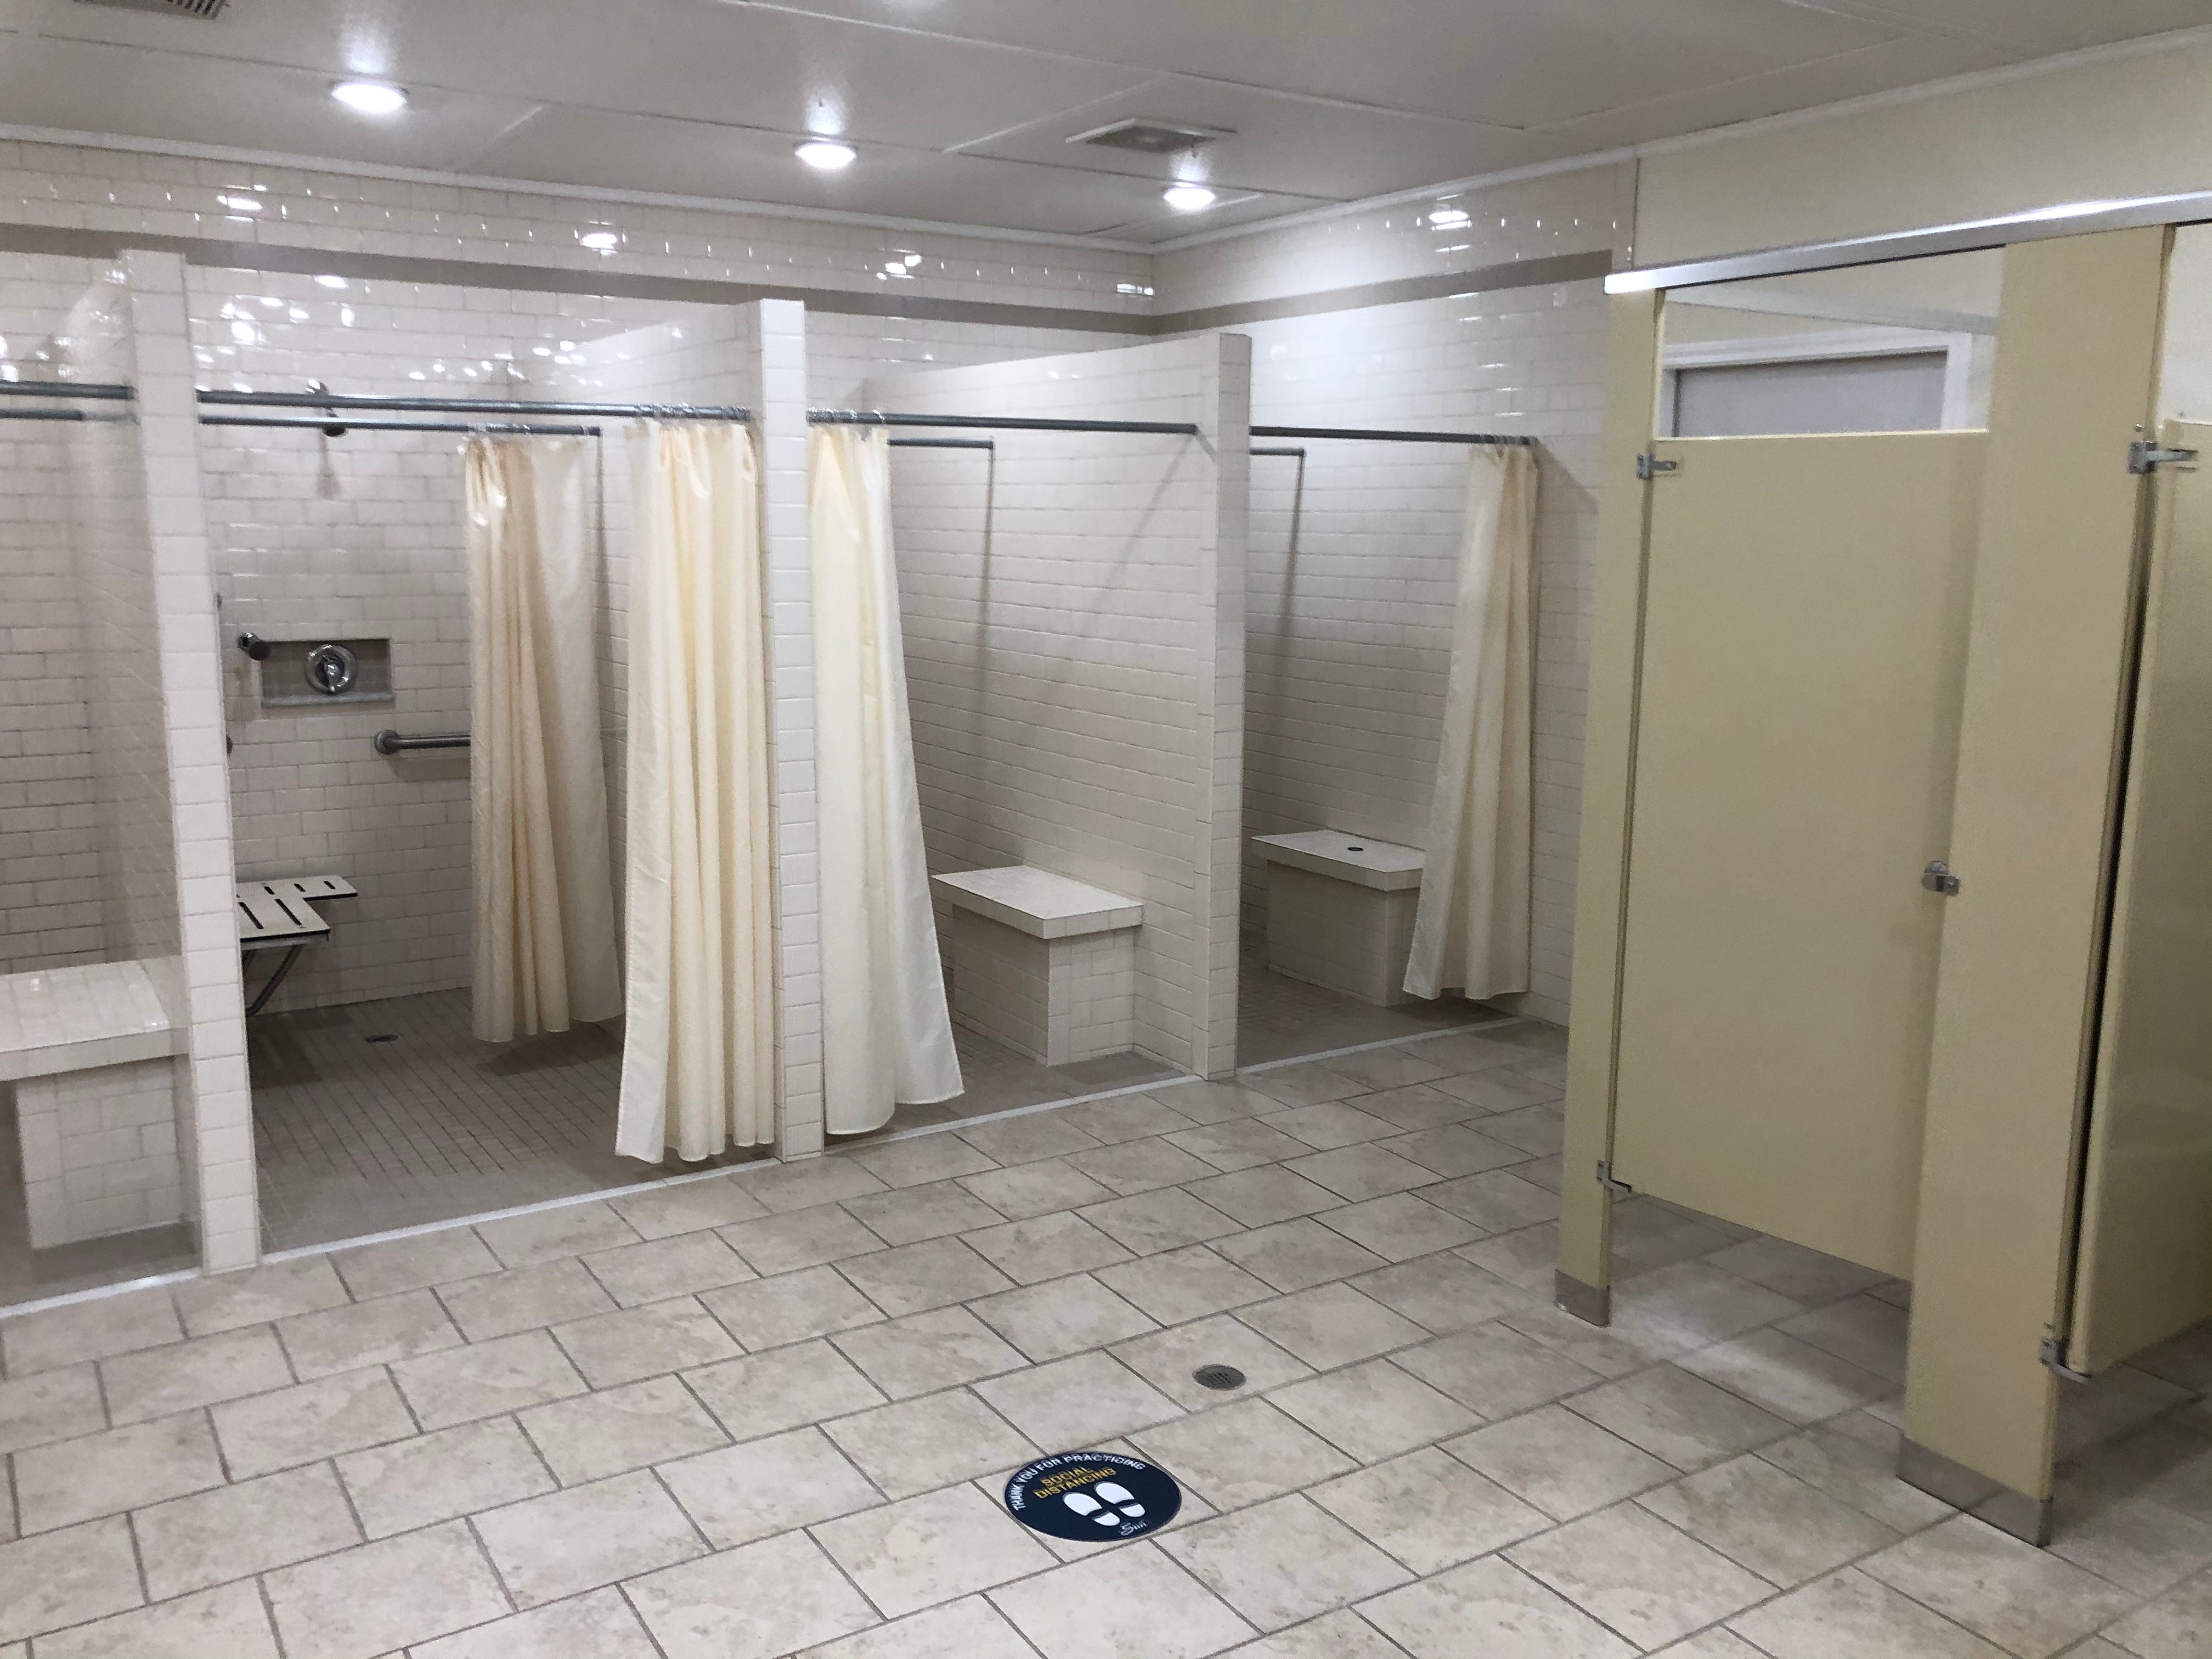 Clean, accessible bathroom facilities